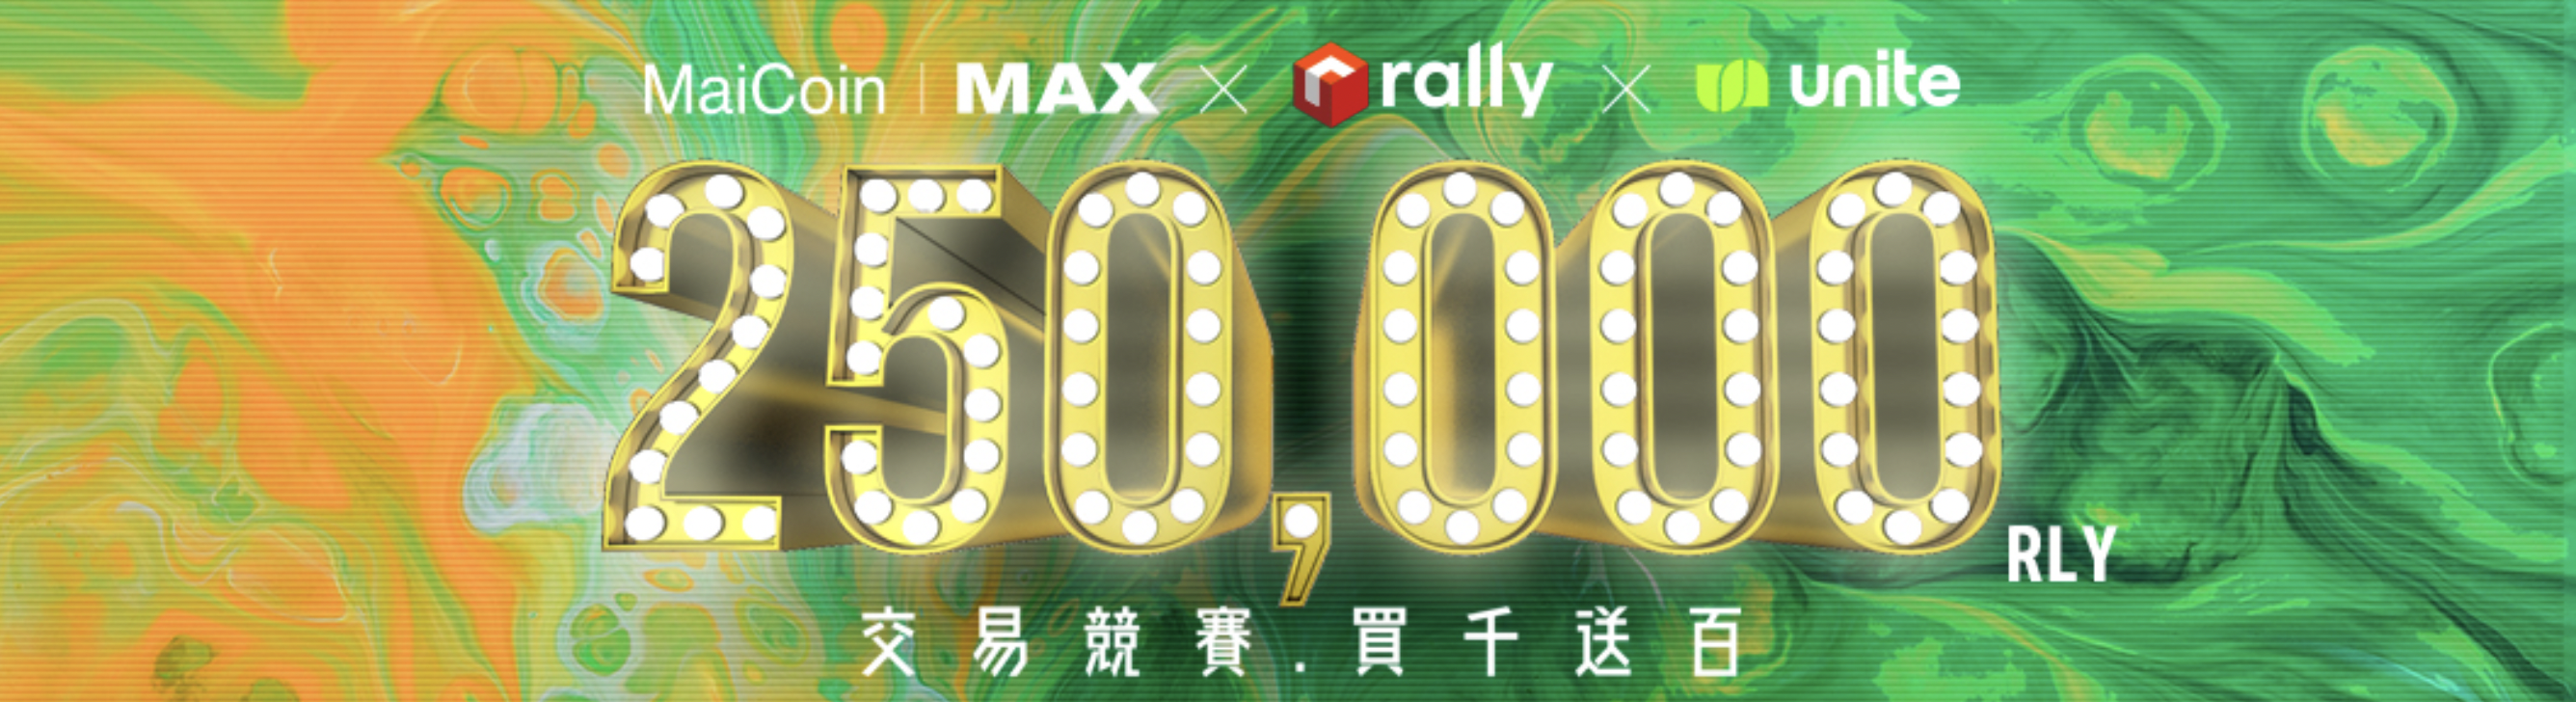 MAX x Unite.io（RLY Token）活動教學：完成簡單任務、交易競賽，最高百萬台幣總獎勵